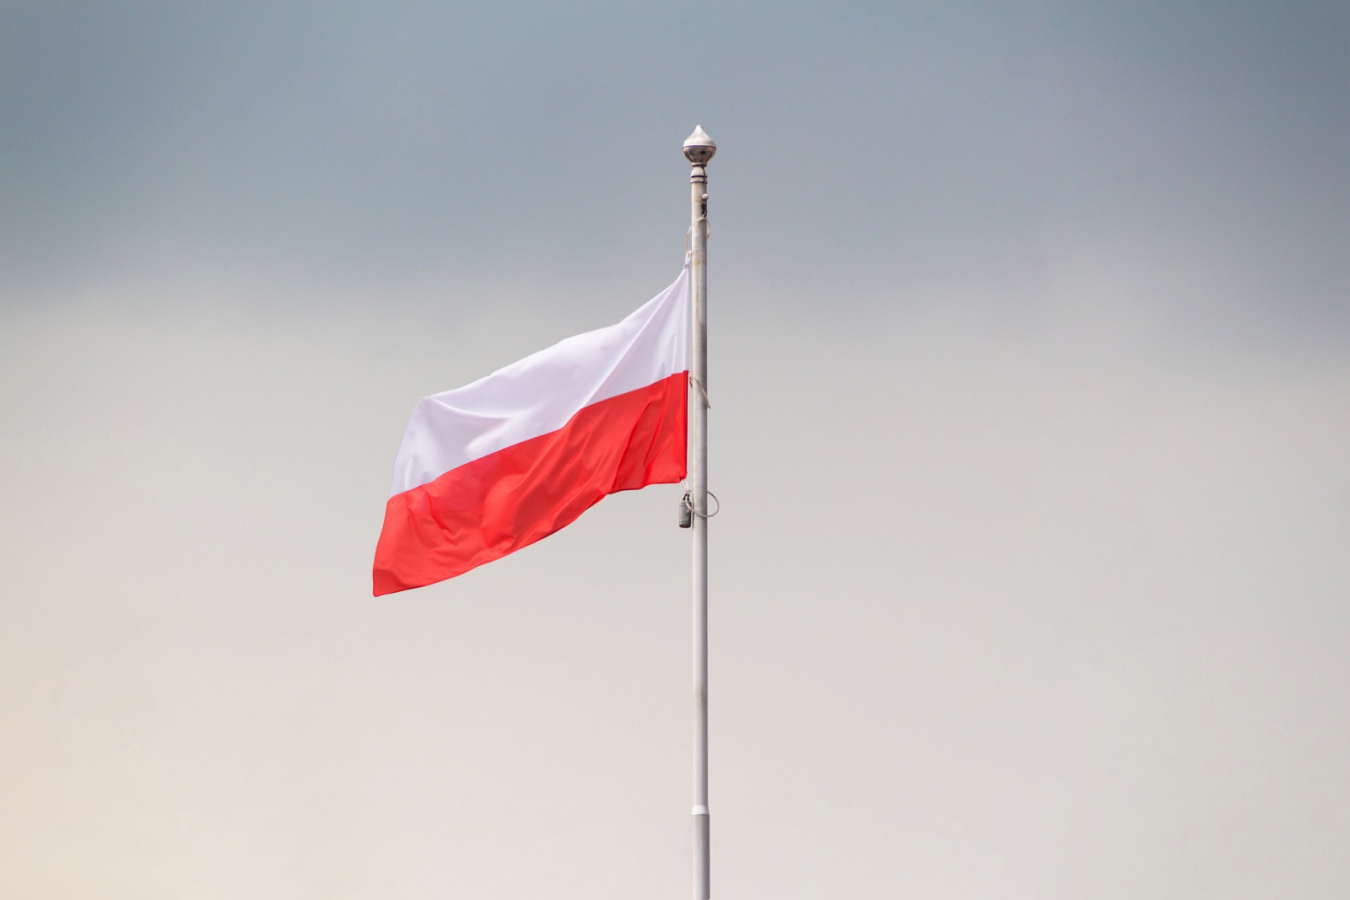 Umowa na instalację masztu z flagą Polski podpisana